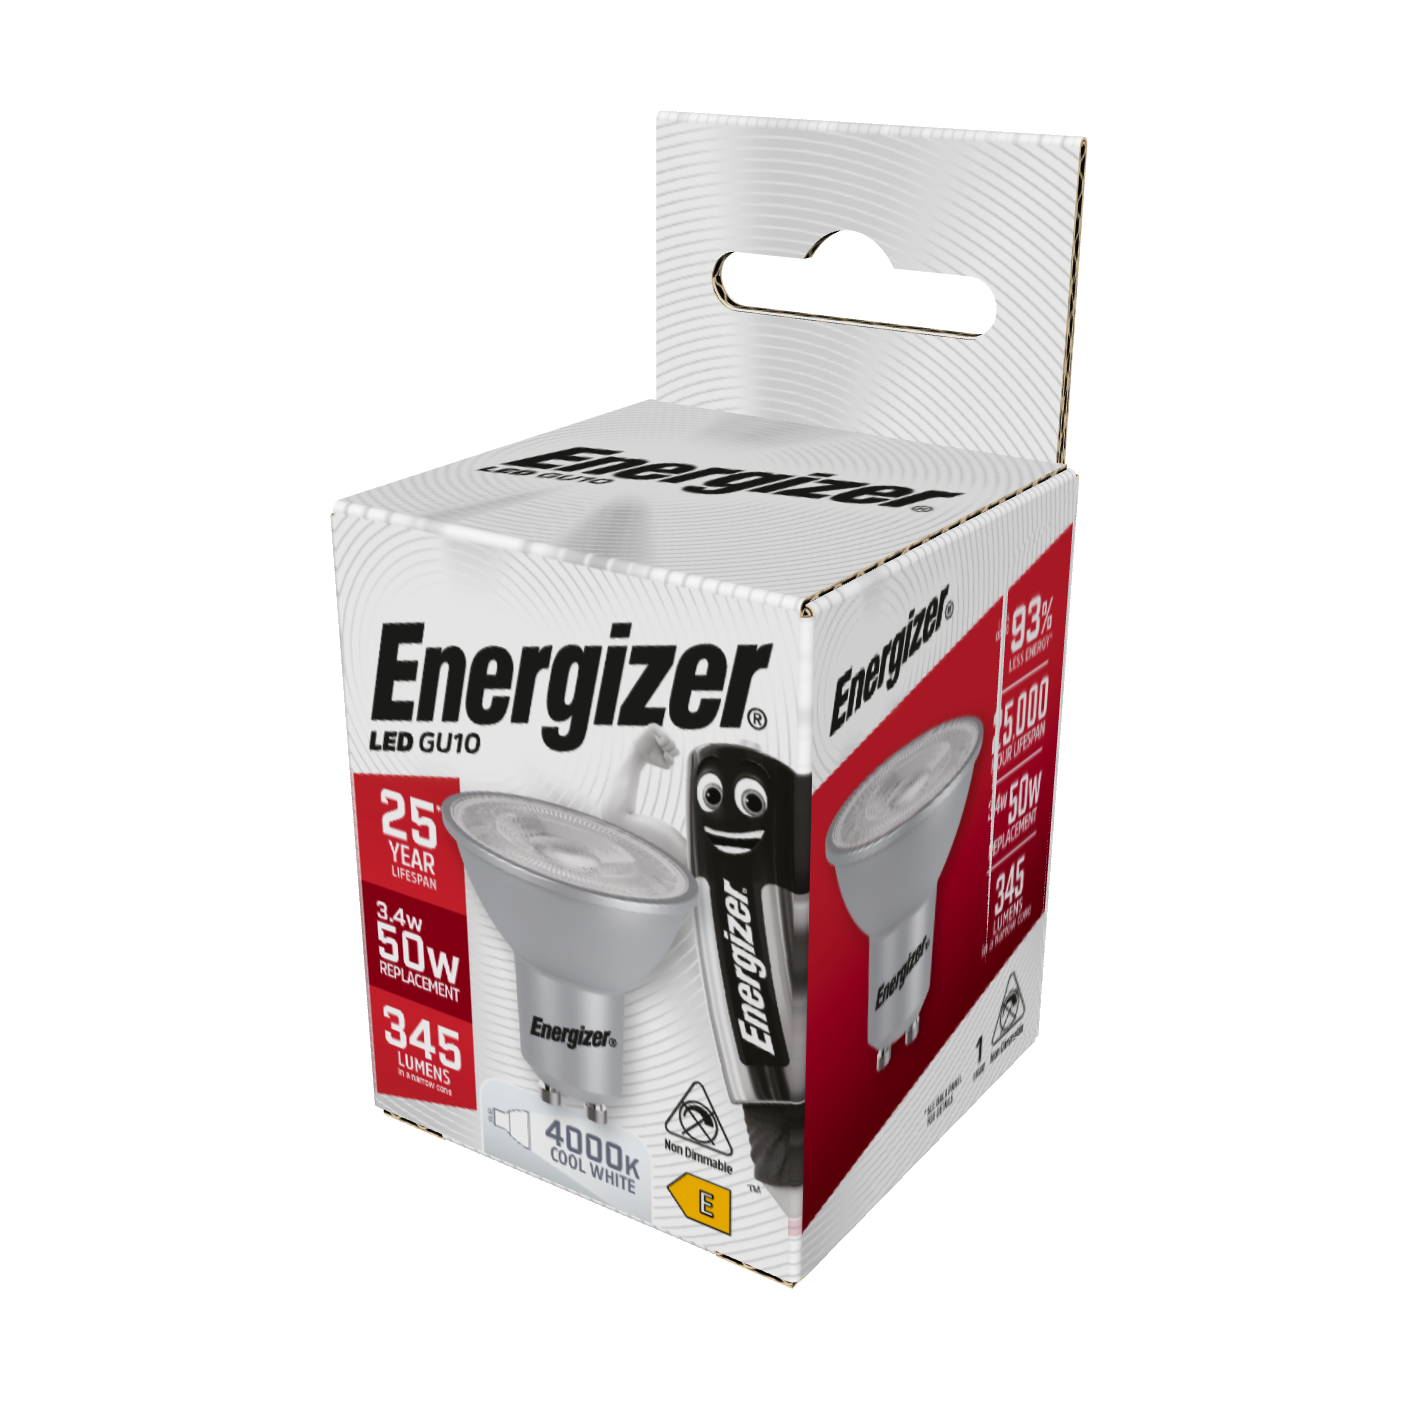 Energizer LED GU10 345lm 3.4W 4,000K (Cool White), Box of 1